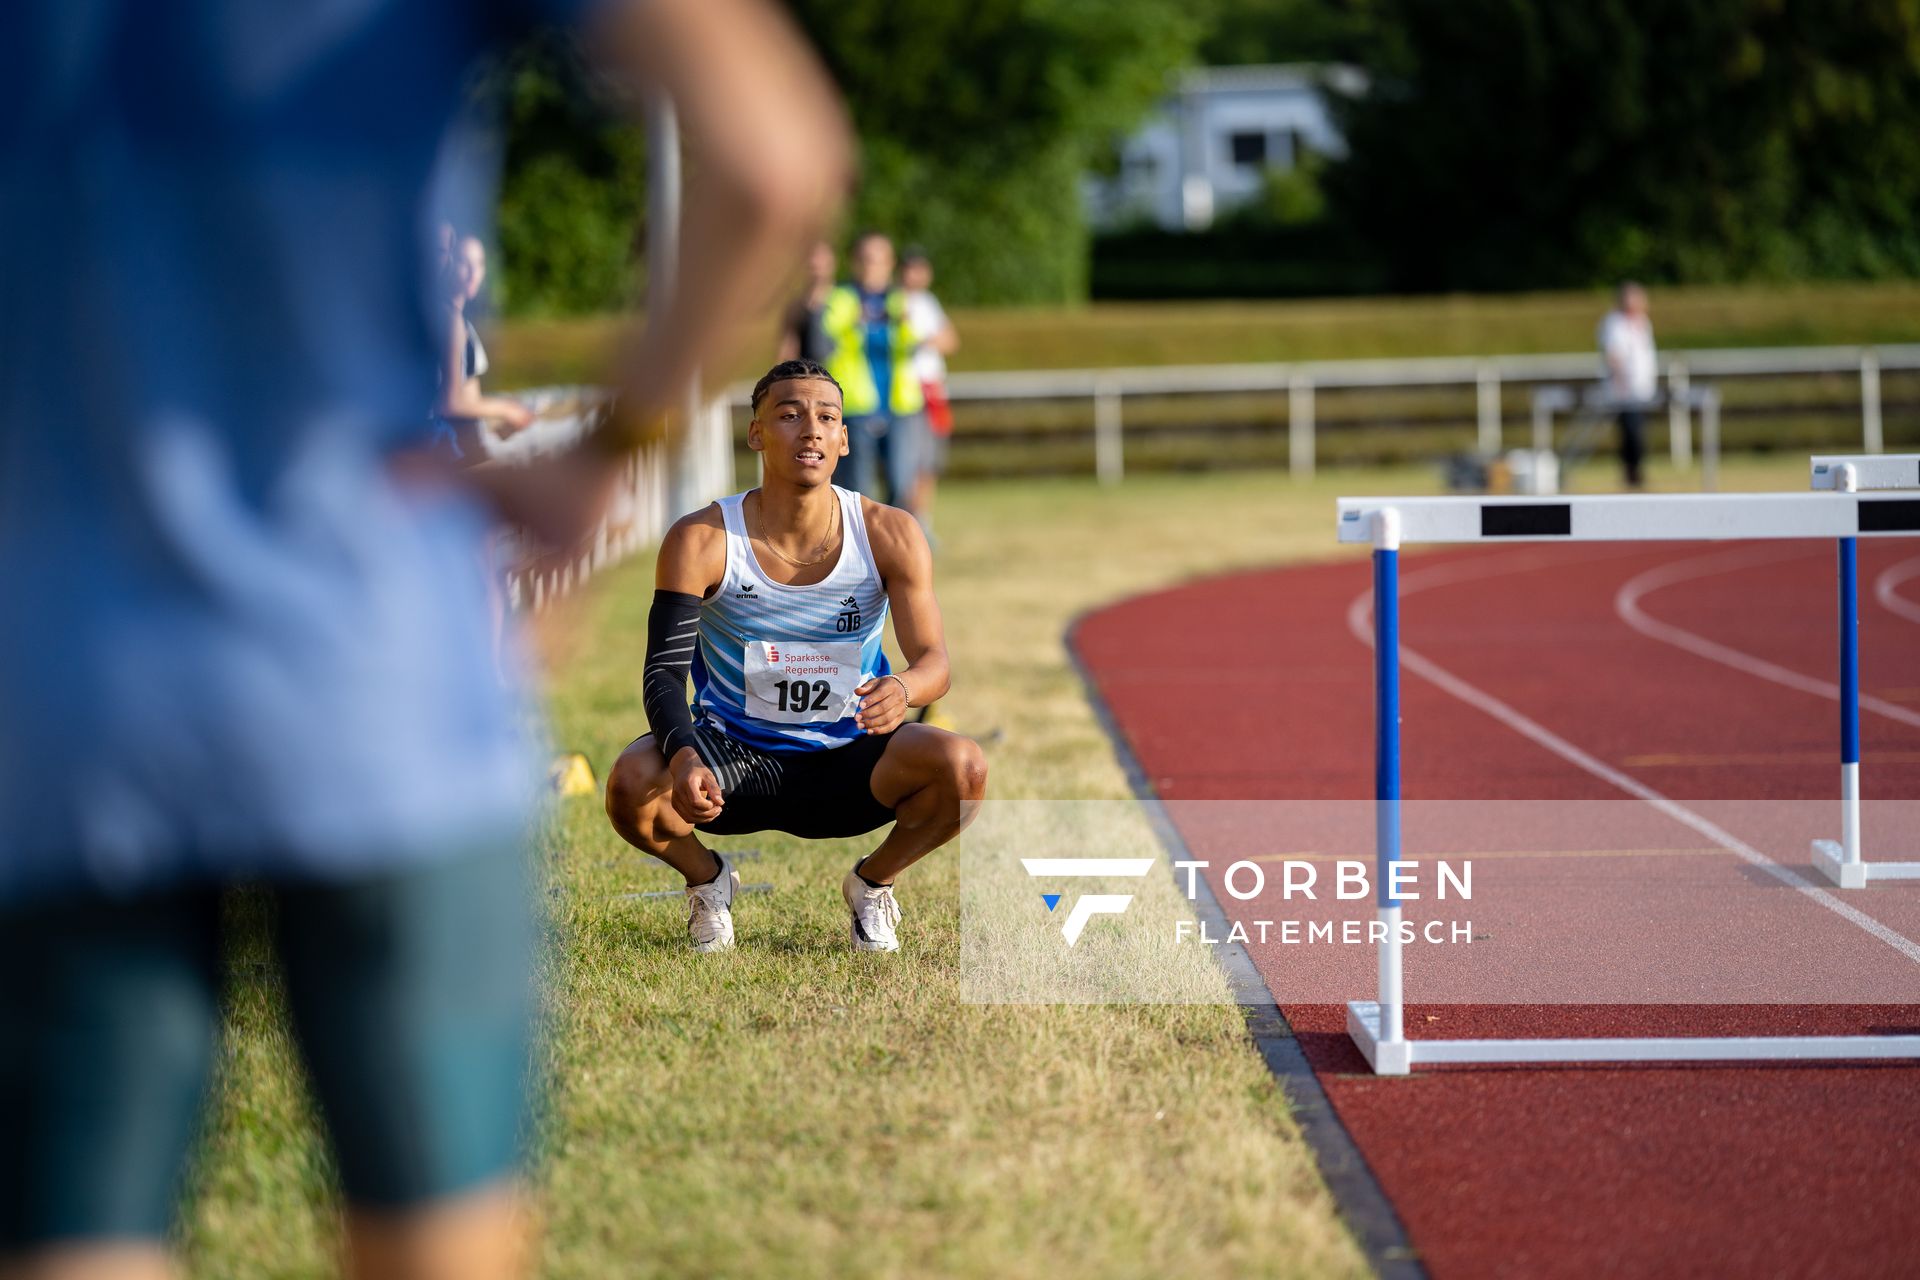 Jordan Gordon (OTB Osnabrueck) muss die 400m Huerden abbrechen am 26.07.2020 waehrend der Sparkassen Gala in Regensburg